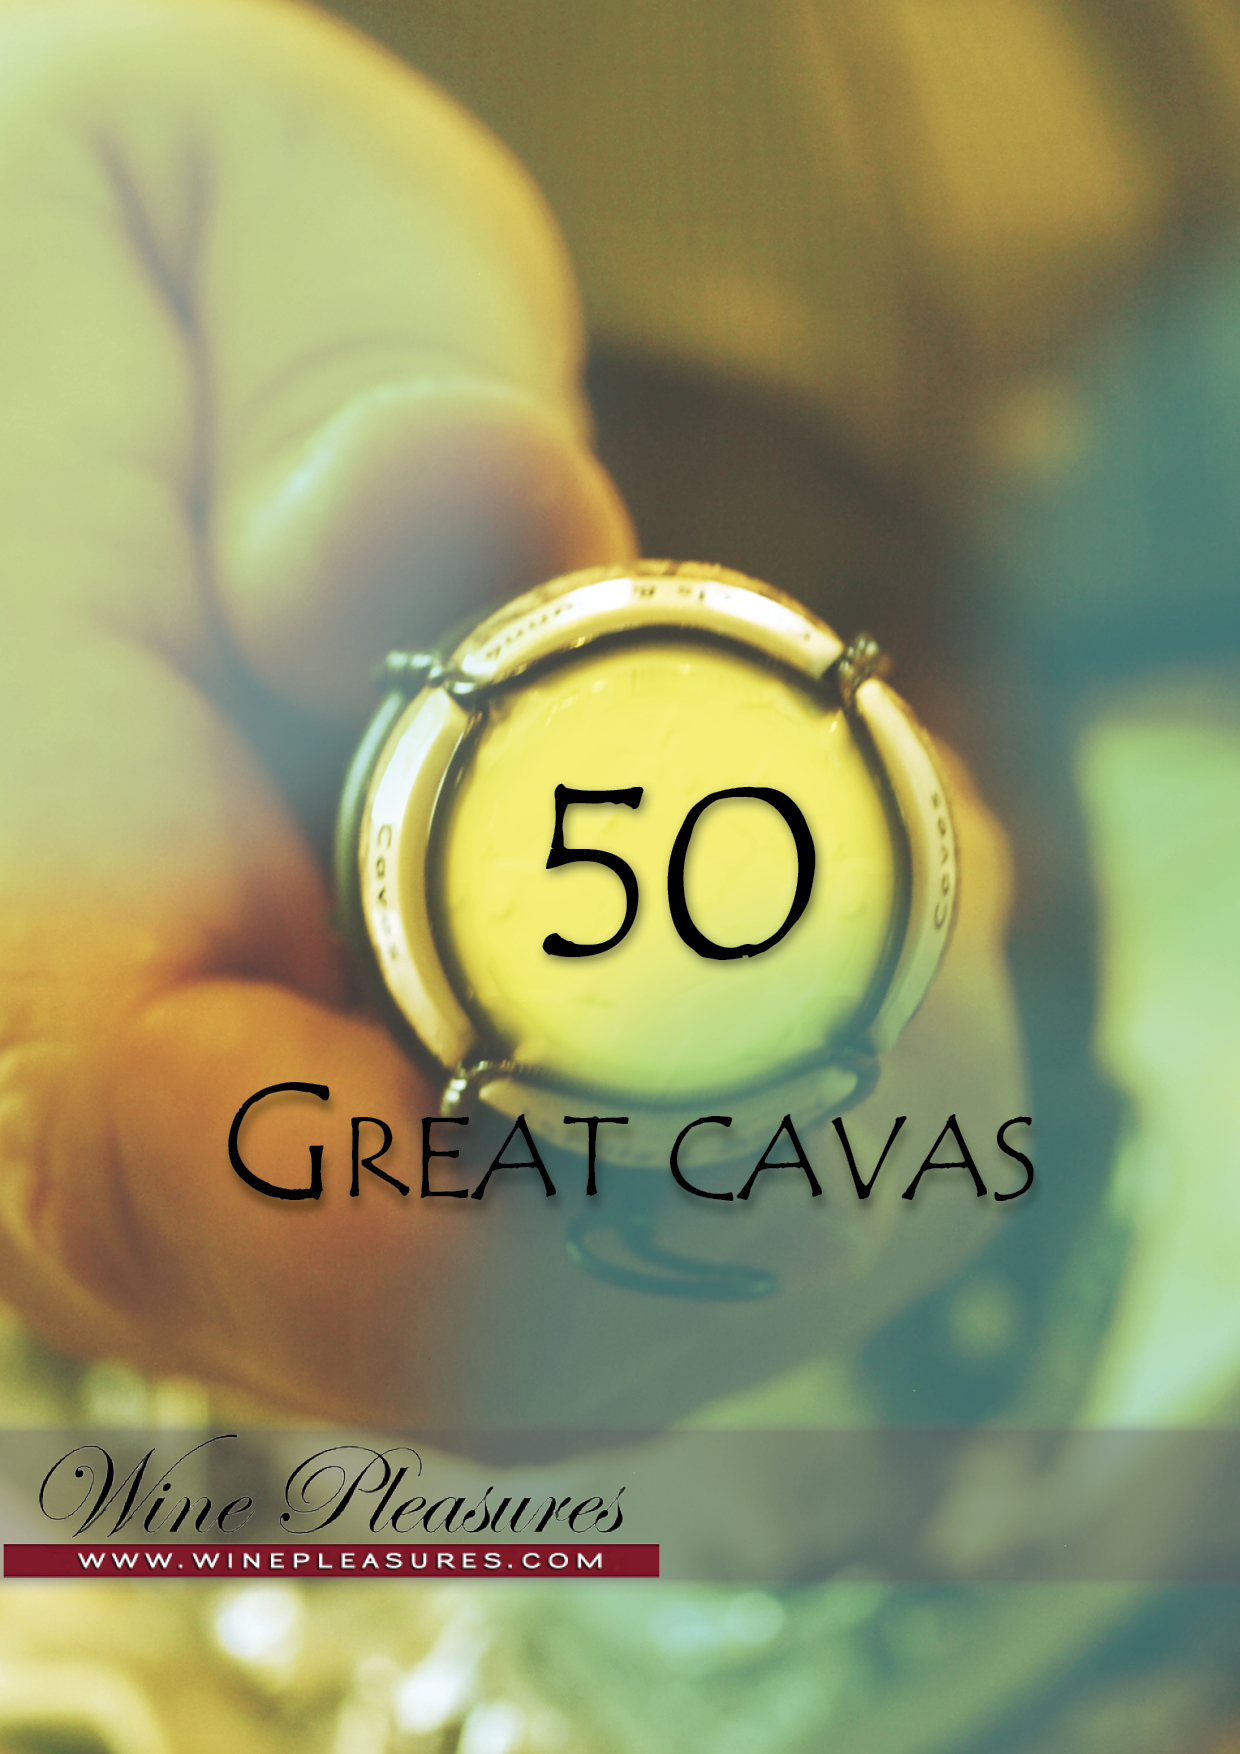 Trek the Via de la Plata & Via Augusta & Discover the 50 Great Cavas 2012